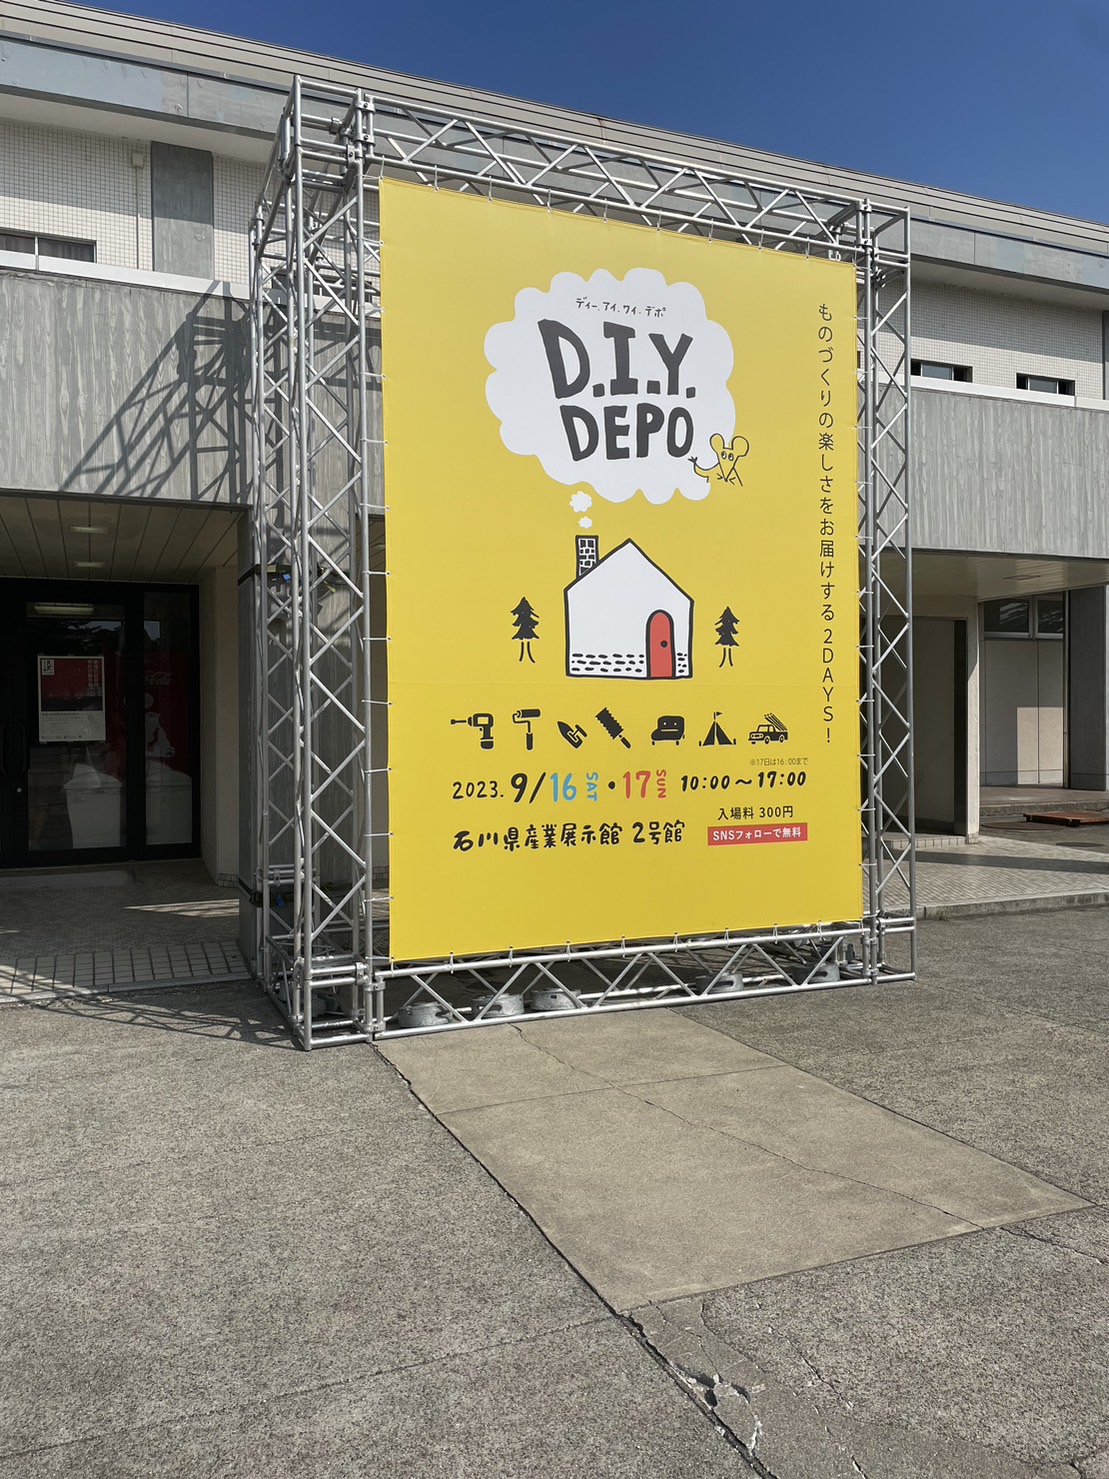 石川県/金沢/ヤマダタッケン/DIYDEPO/リノベーション/DIY